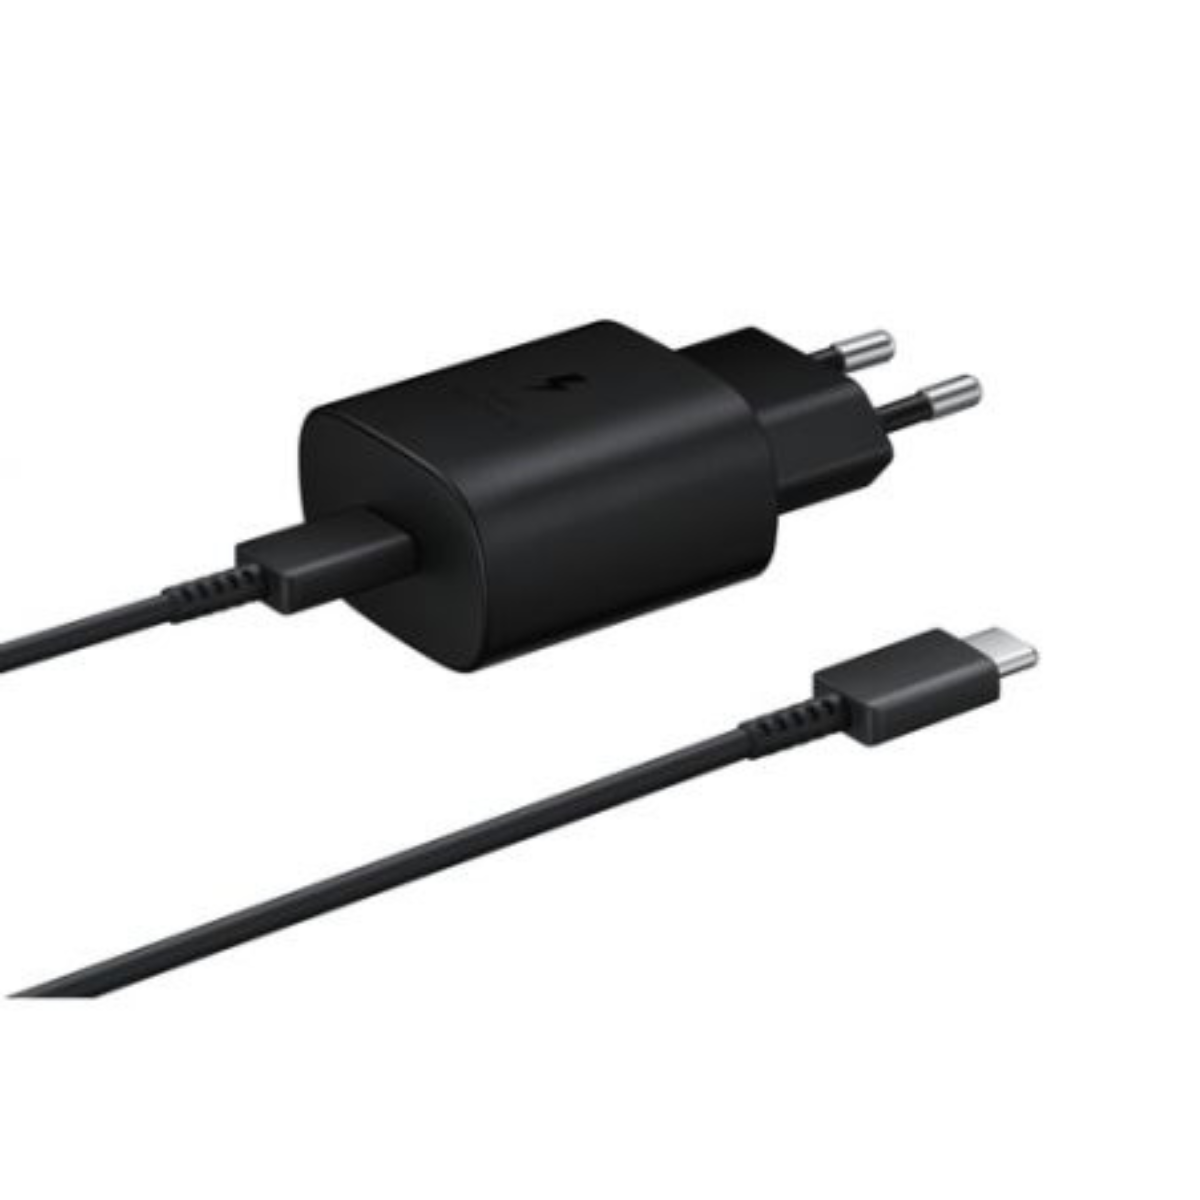 USB-C Charger Kit 15W, Chargeurs secteur, Charge et Accessoires